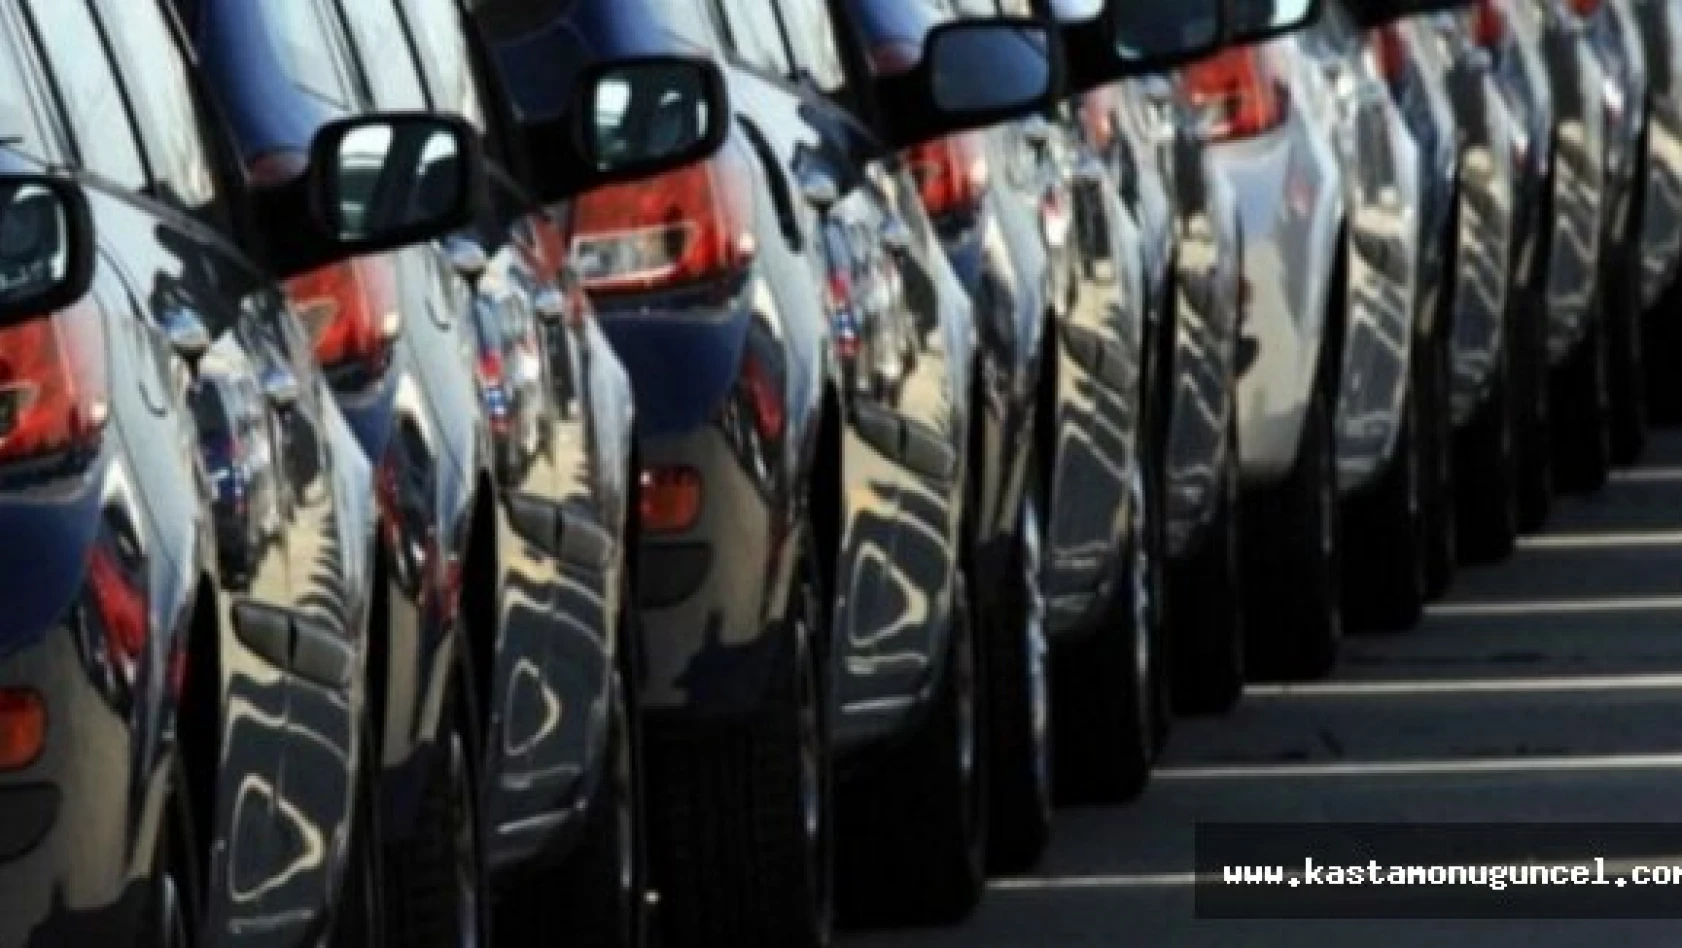 Kastamonu'da son beş yılda araç sayısı yüzde 41 arttı